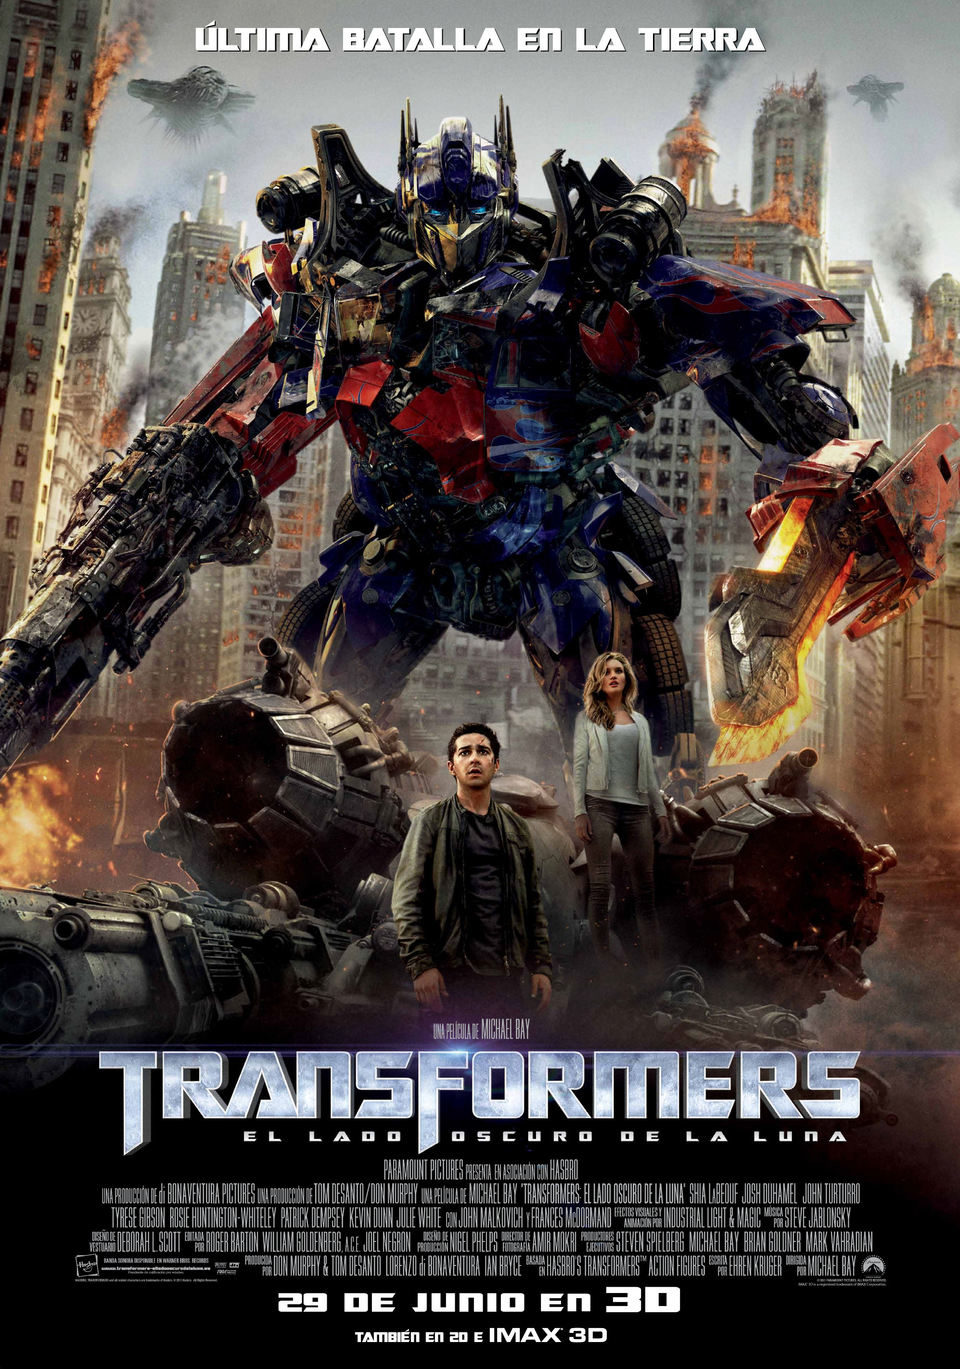 Cartel de Transformers 3: El lado oscuro de la luna - Definitivo España